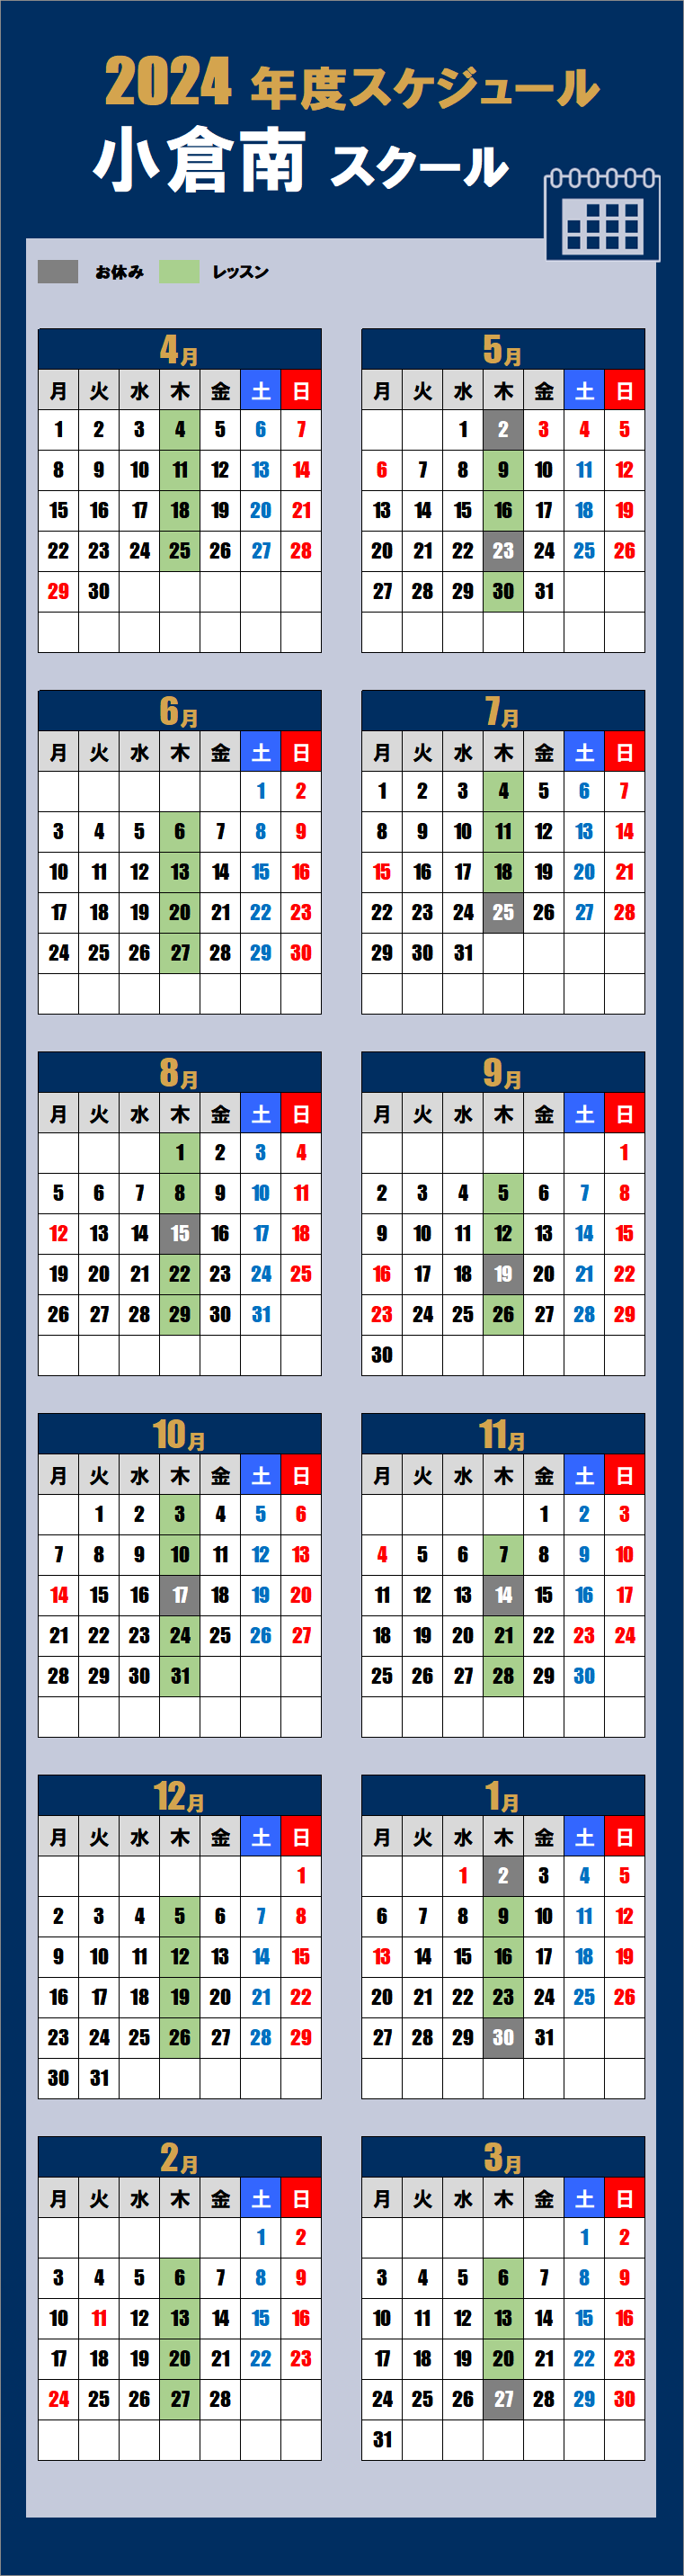 小倉南スクールカレンダー